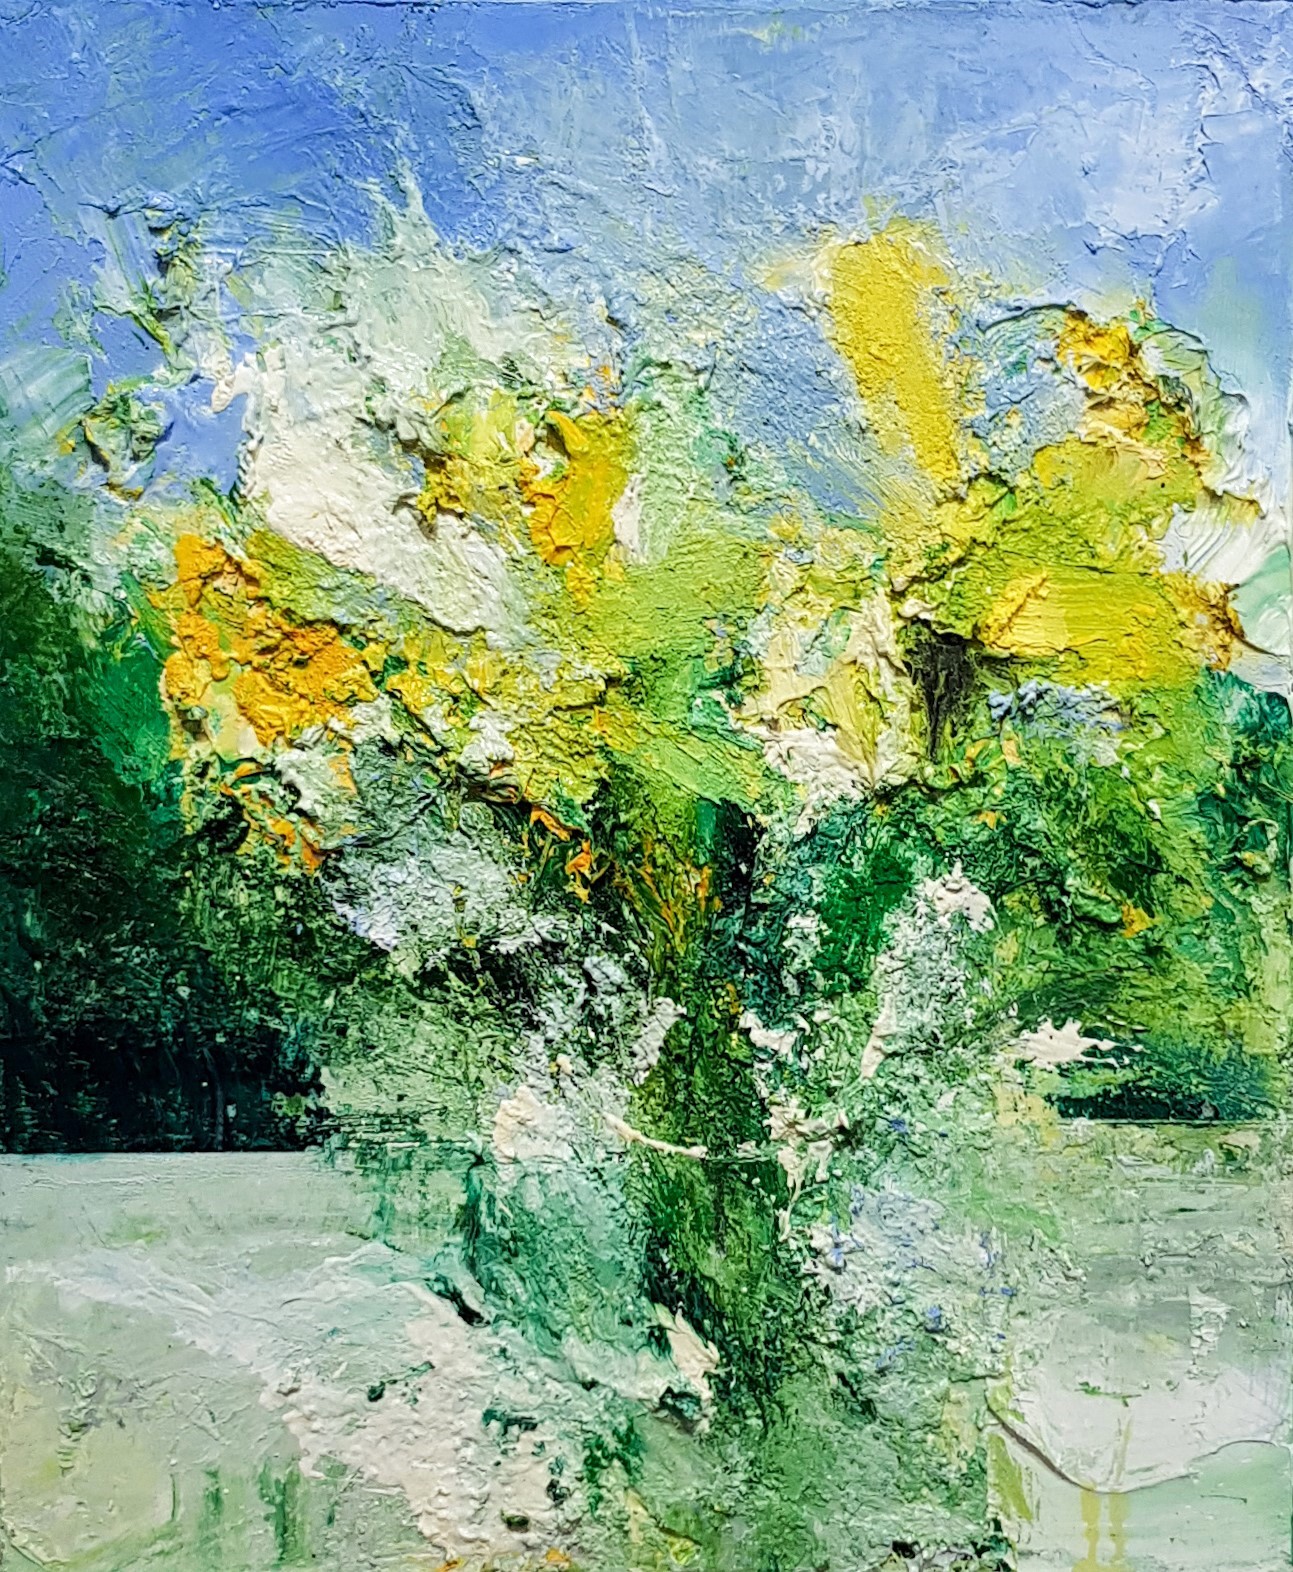 'Daffodils, Vase, Garden Window' by artist Matthew Bourne